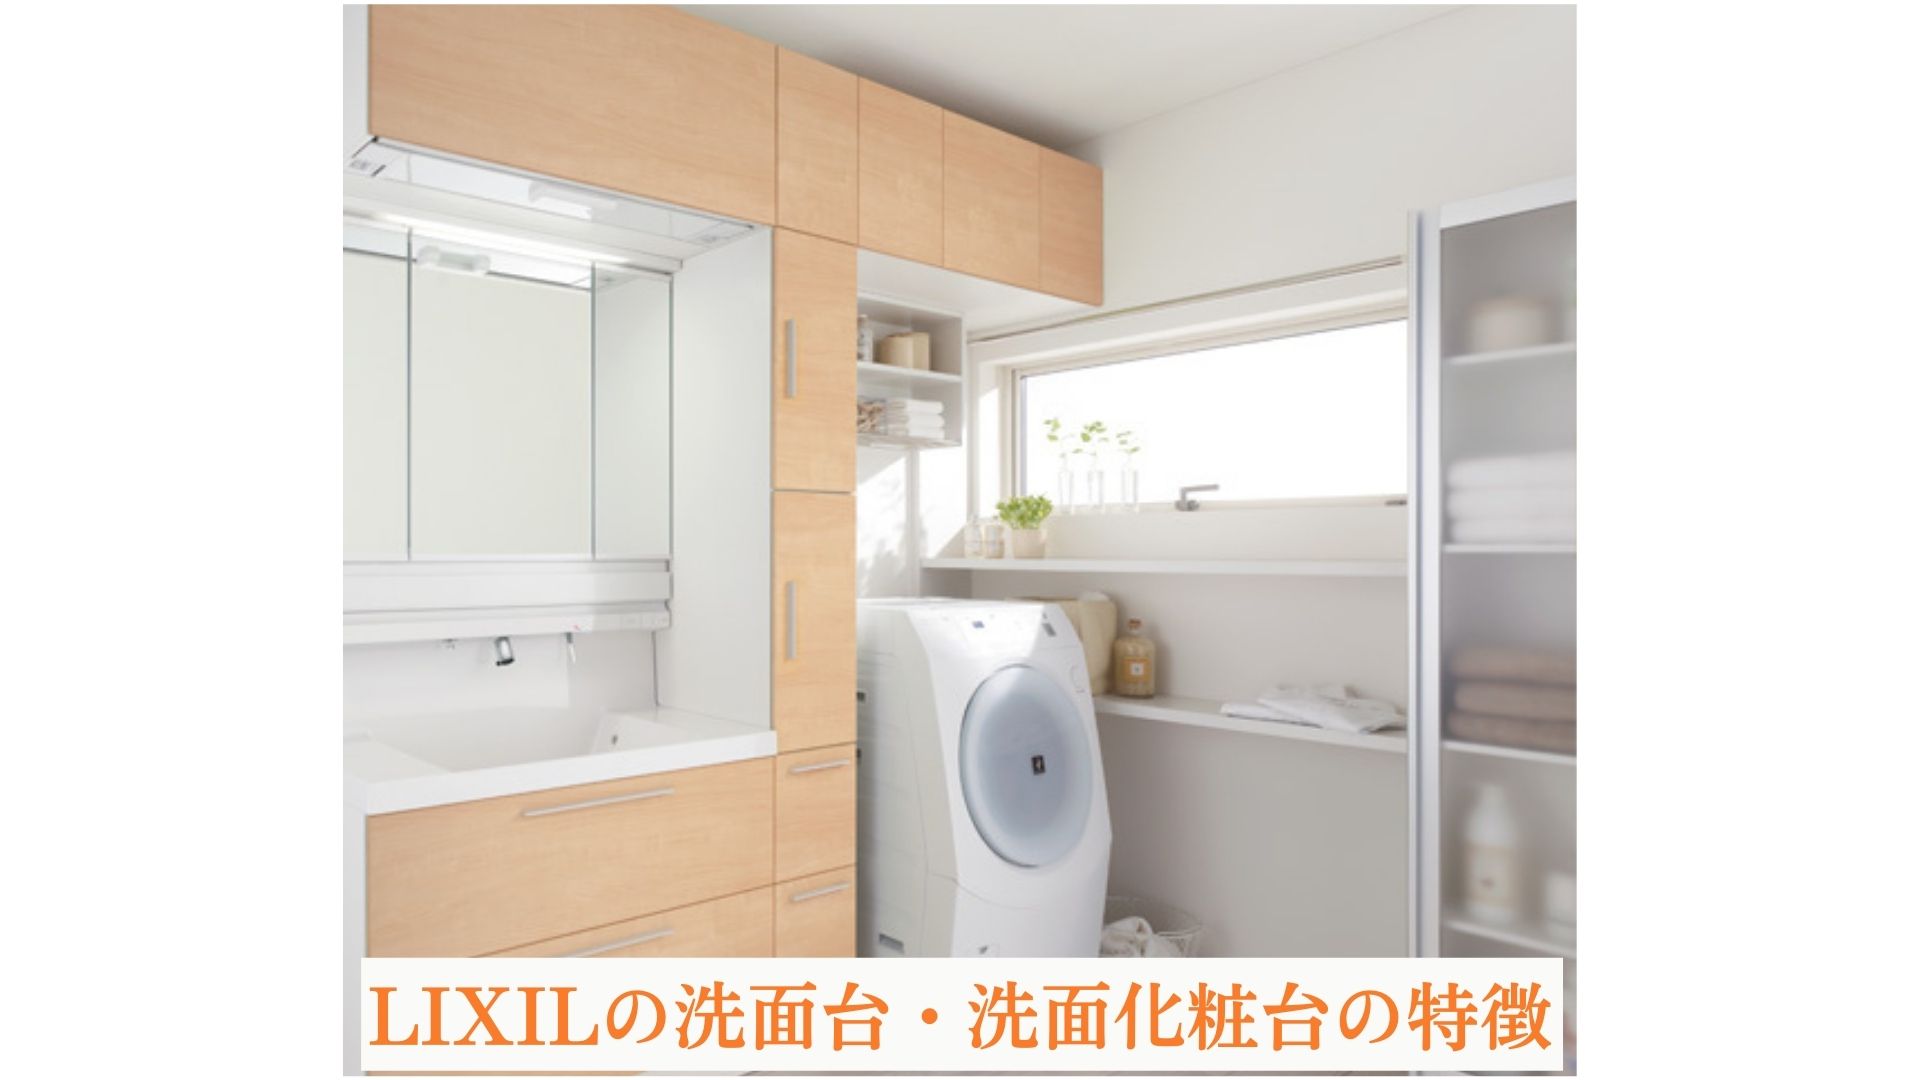 LIXILの洗面台・洗面化粧台の特徴